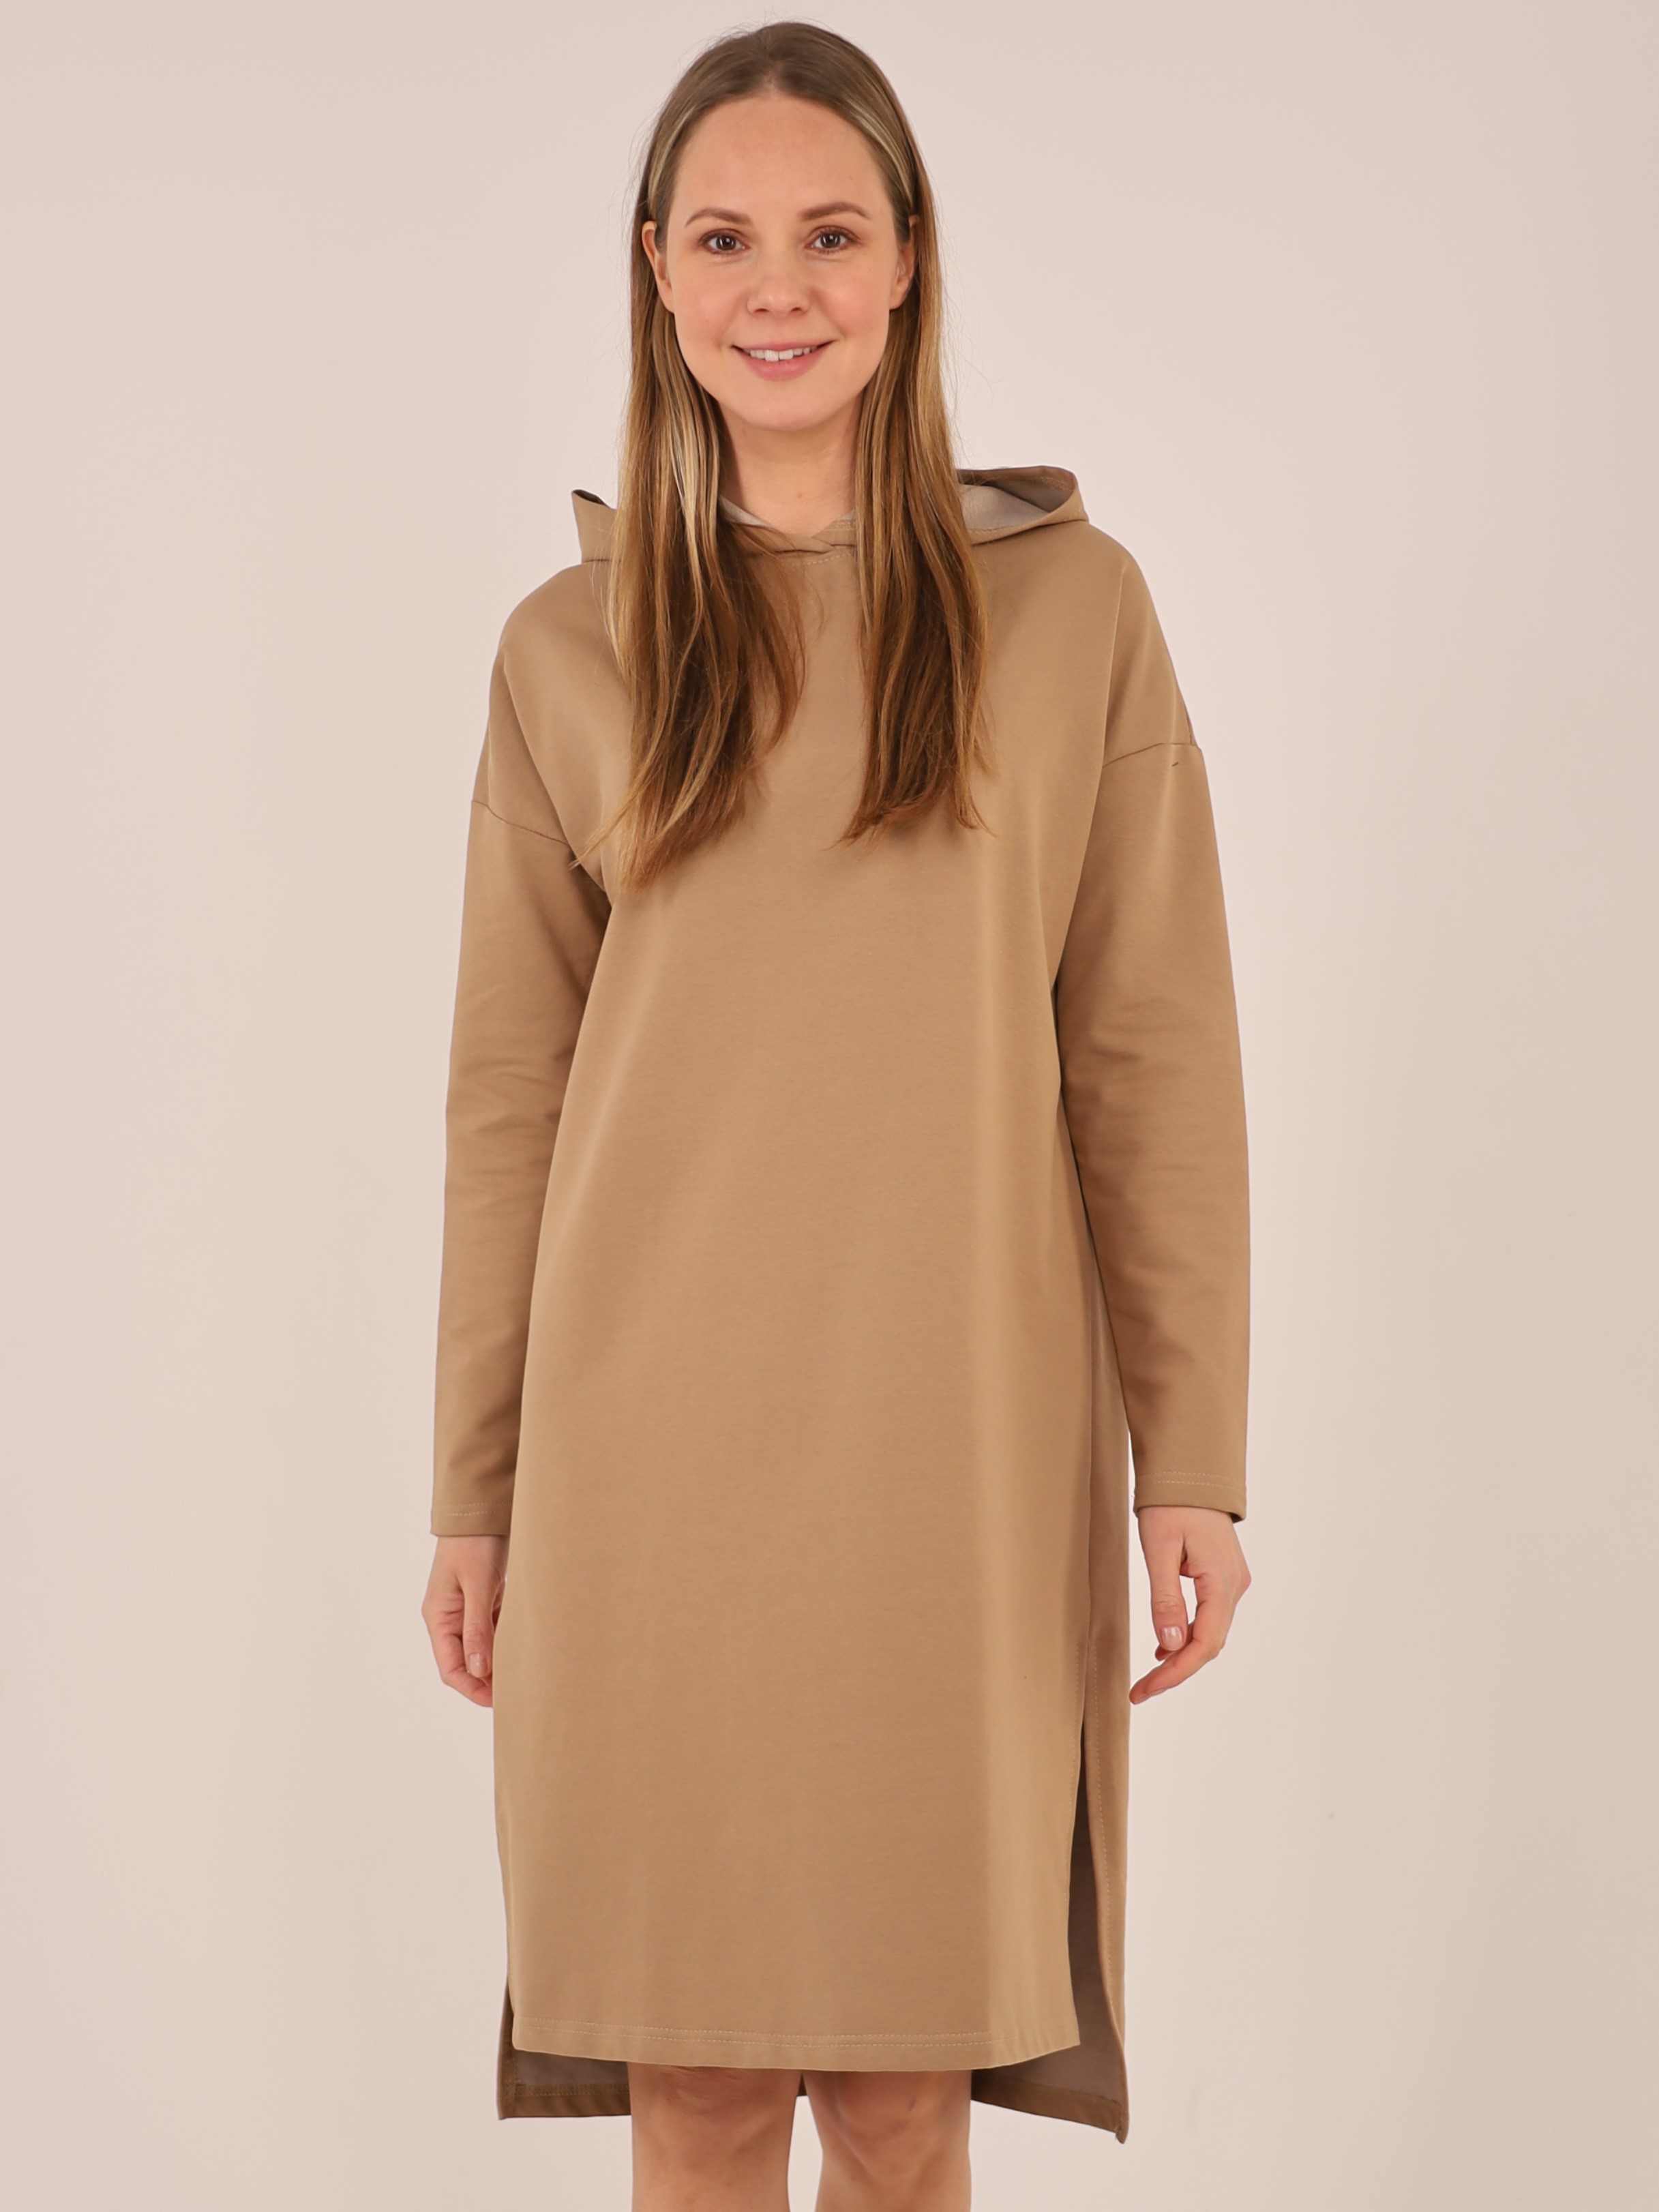 Платье женское с капюшоном бежевое арт. 100124